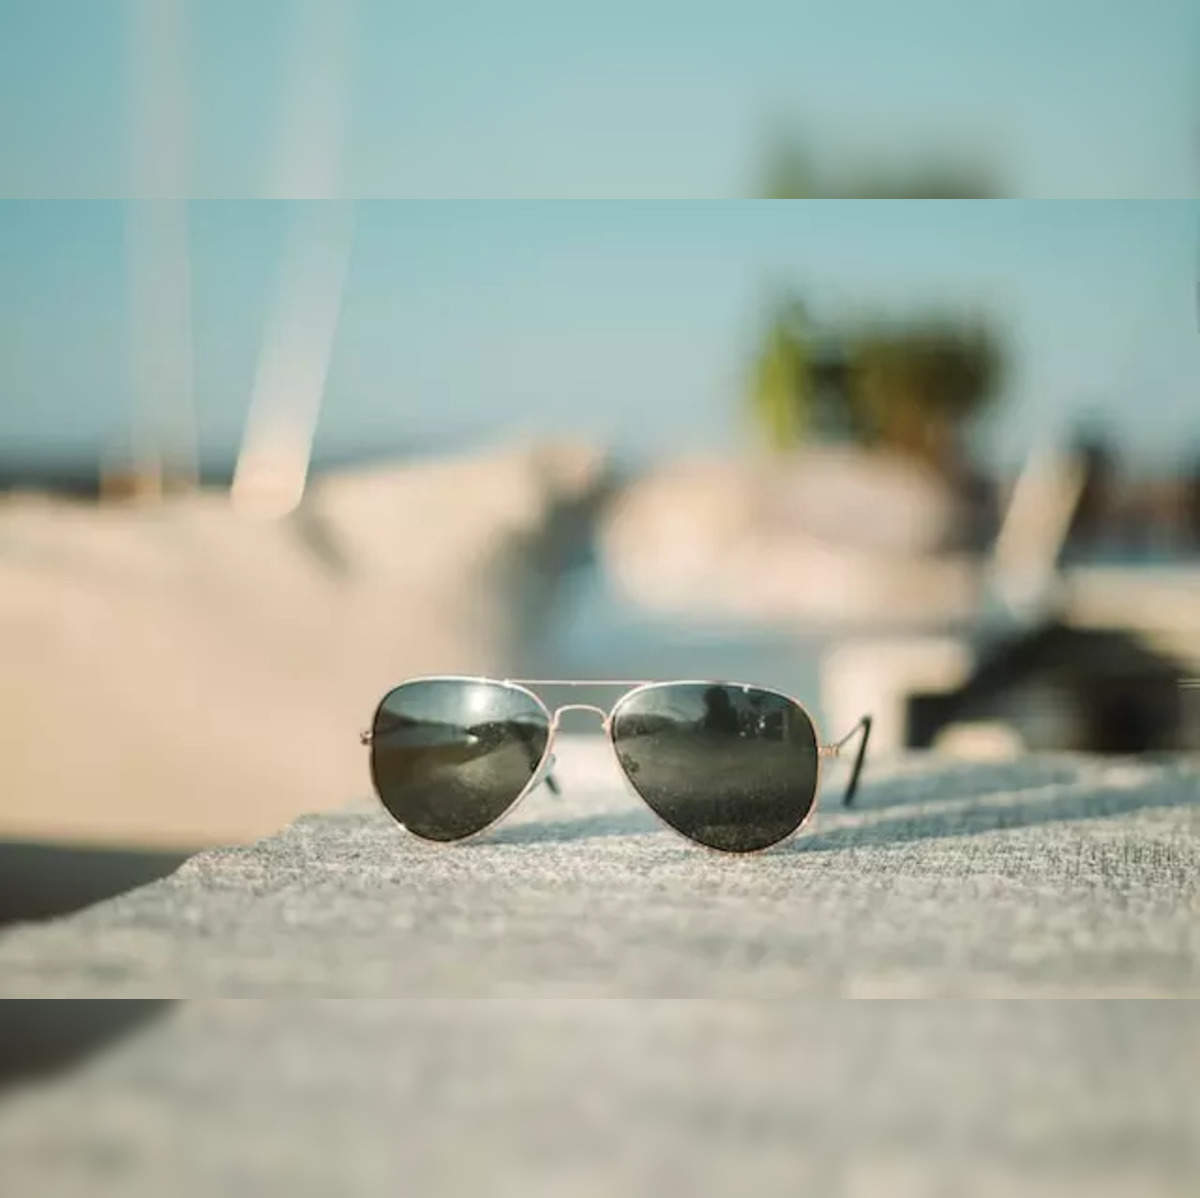 https://img.etimg.com/thumb/width-1200,height-1200,imgsize-12156,resizemode-75,msid-96742922/top-trending-products/lifestyle/6-best-aviator-sunglasses-for-men.jpg